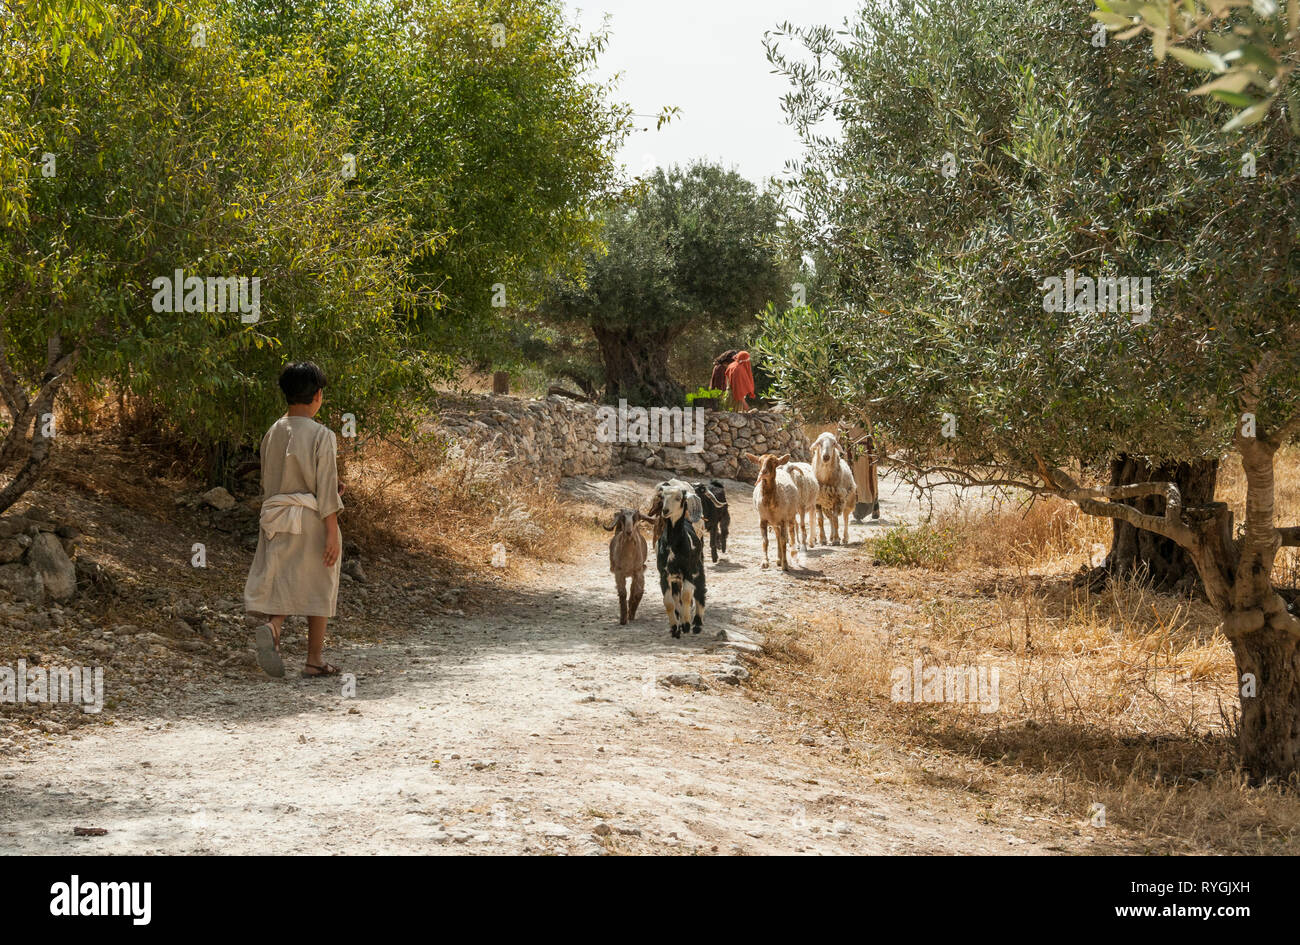 Nazaret,Israel,22-may-2010:boy en la ropa de la época de la biblia camina con ovejas y cabras en Nazaret en Israel,Nazaret es famoso de la Biblia desde el tiempo de Jesús Foto de stock